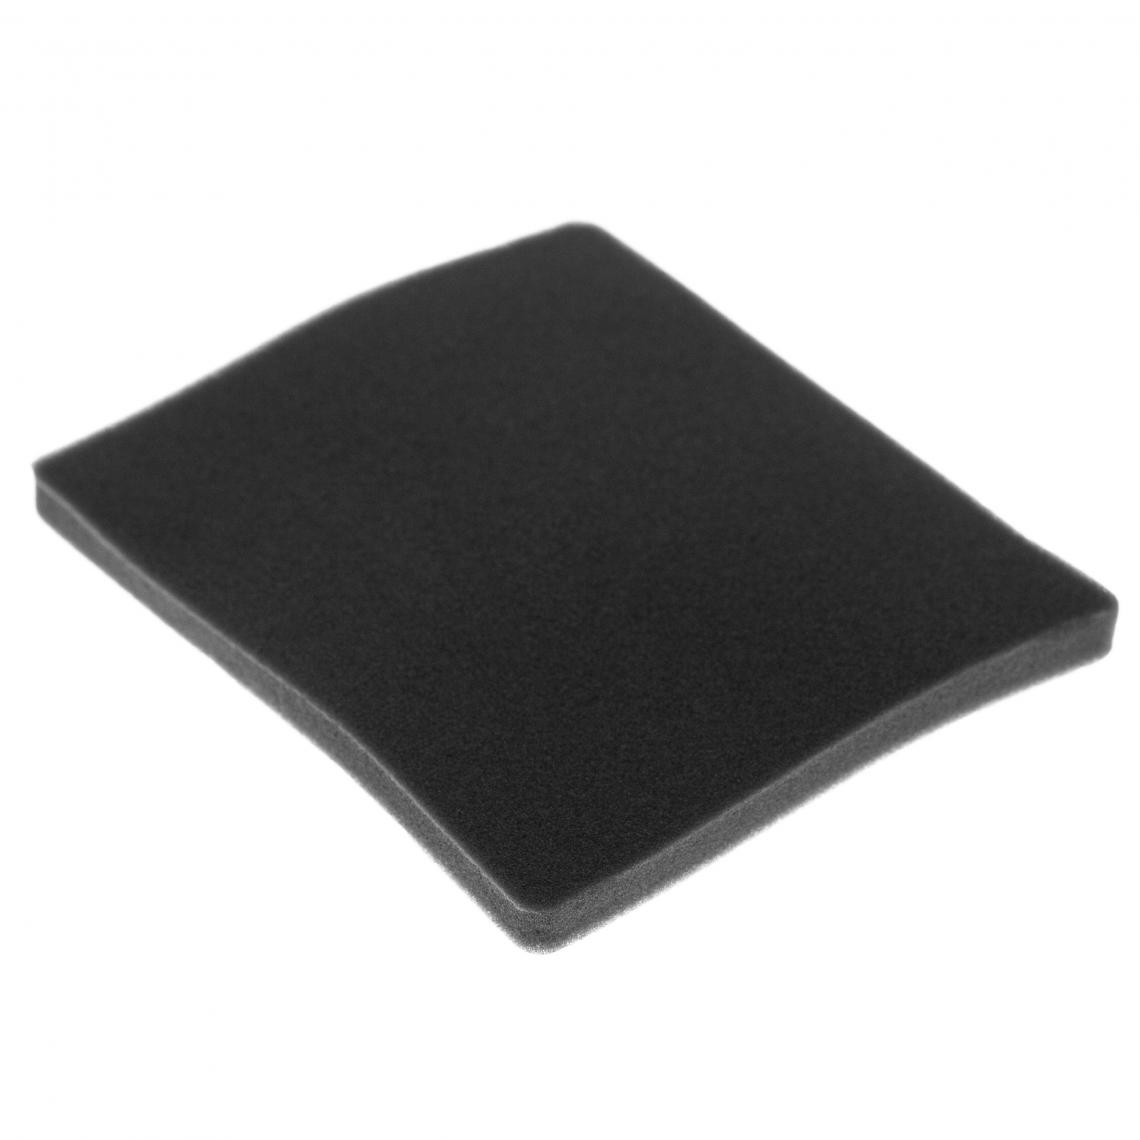 Vhbw - vhbw Filtre compatible avec Electrolux ZAC6708BB (910288326) aspirateur - filtre de sortie d'air (filtre éponge), noir - Accessoire entretien des sols